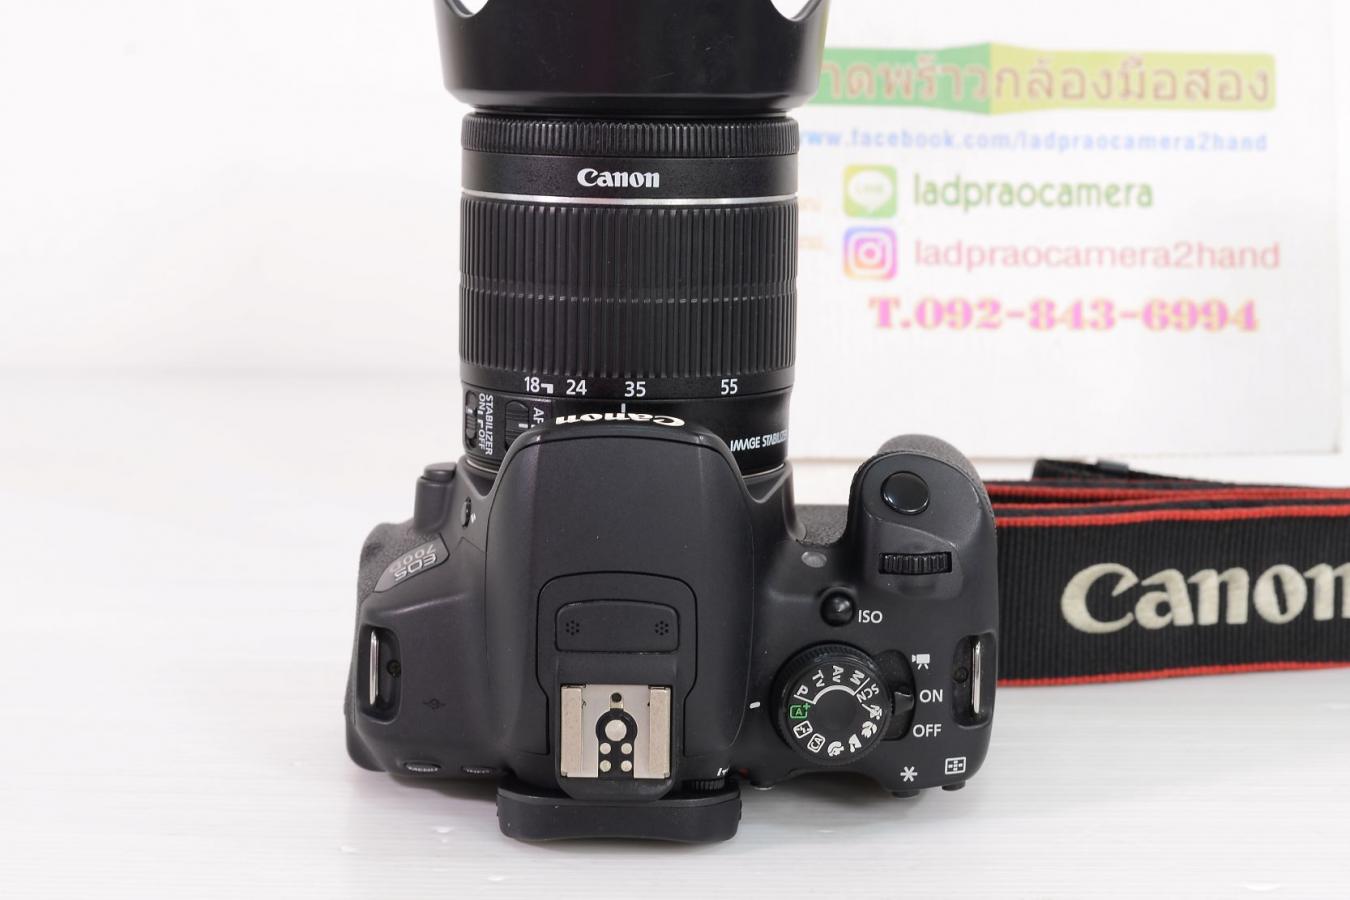 Canon 700D+18-55 STM เครื่องสวยๆเมนูไทย ระบบปกติ ไม่มีตำหนิ อุปกรณ์ครบ